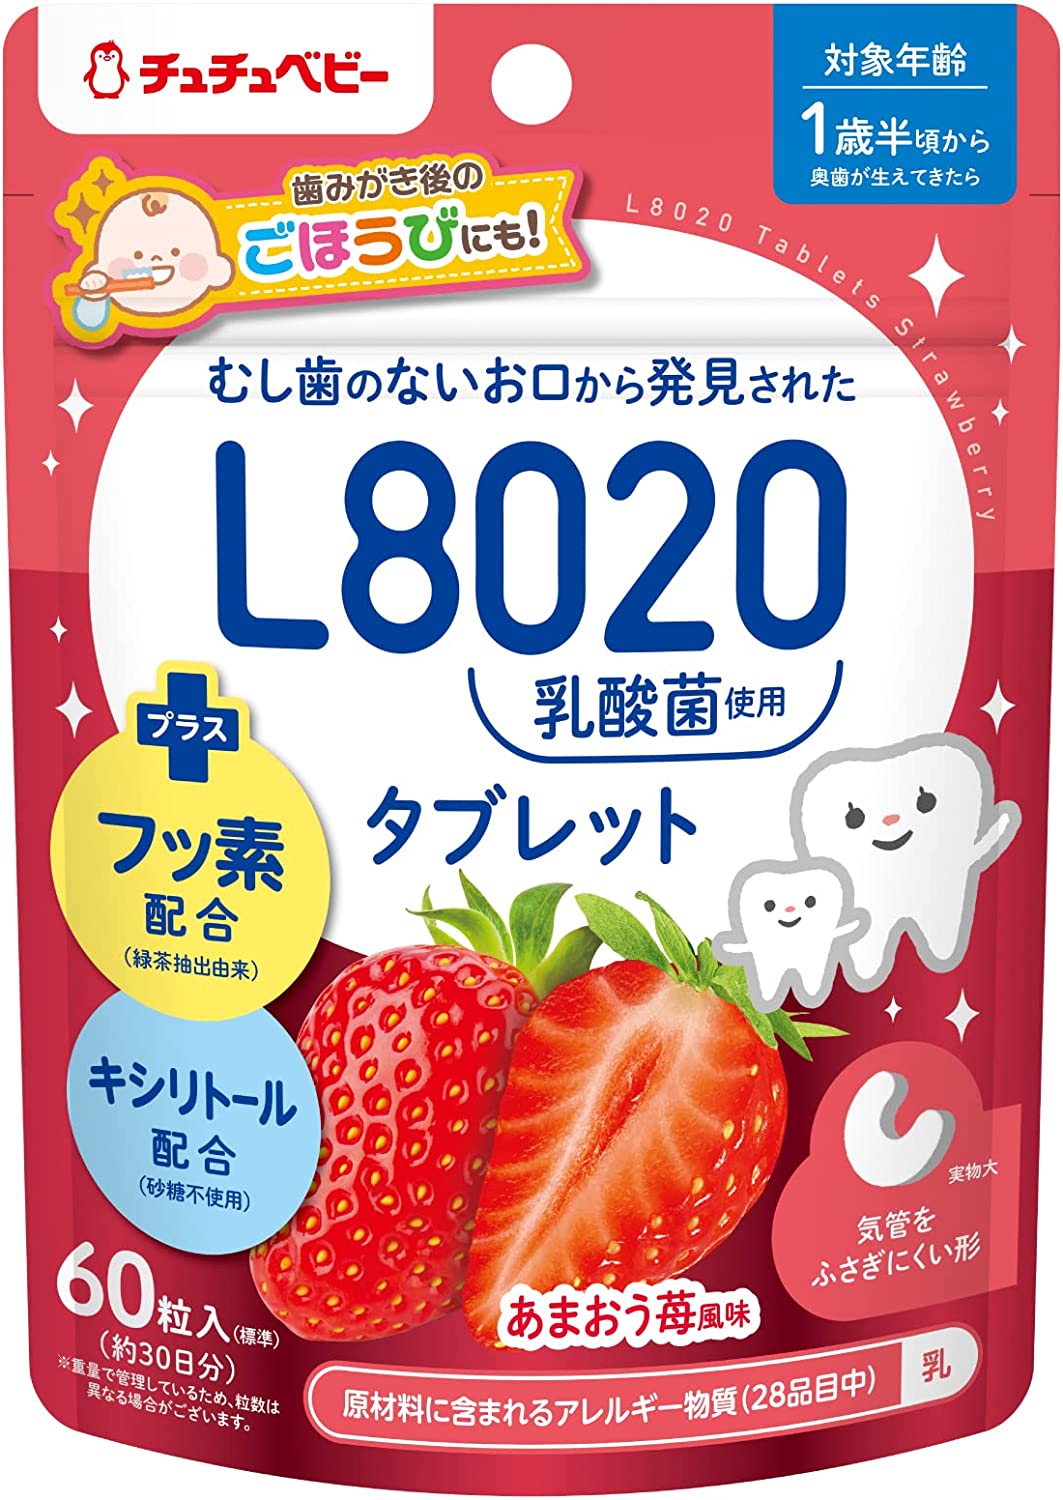 捷古斯 ChuChuBaby JEX Chutu嬰兒L8020乳酸細菌片劑Amaou草莓味60粒